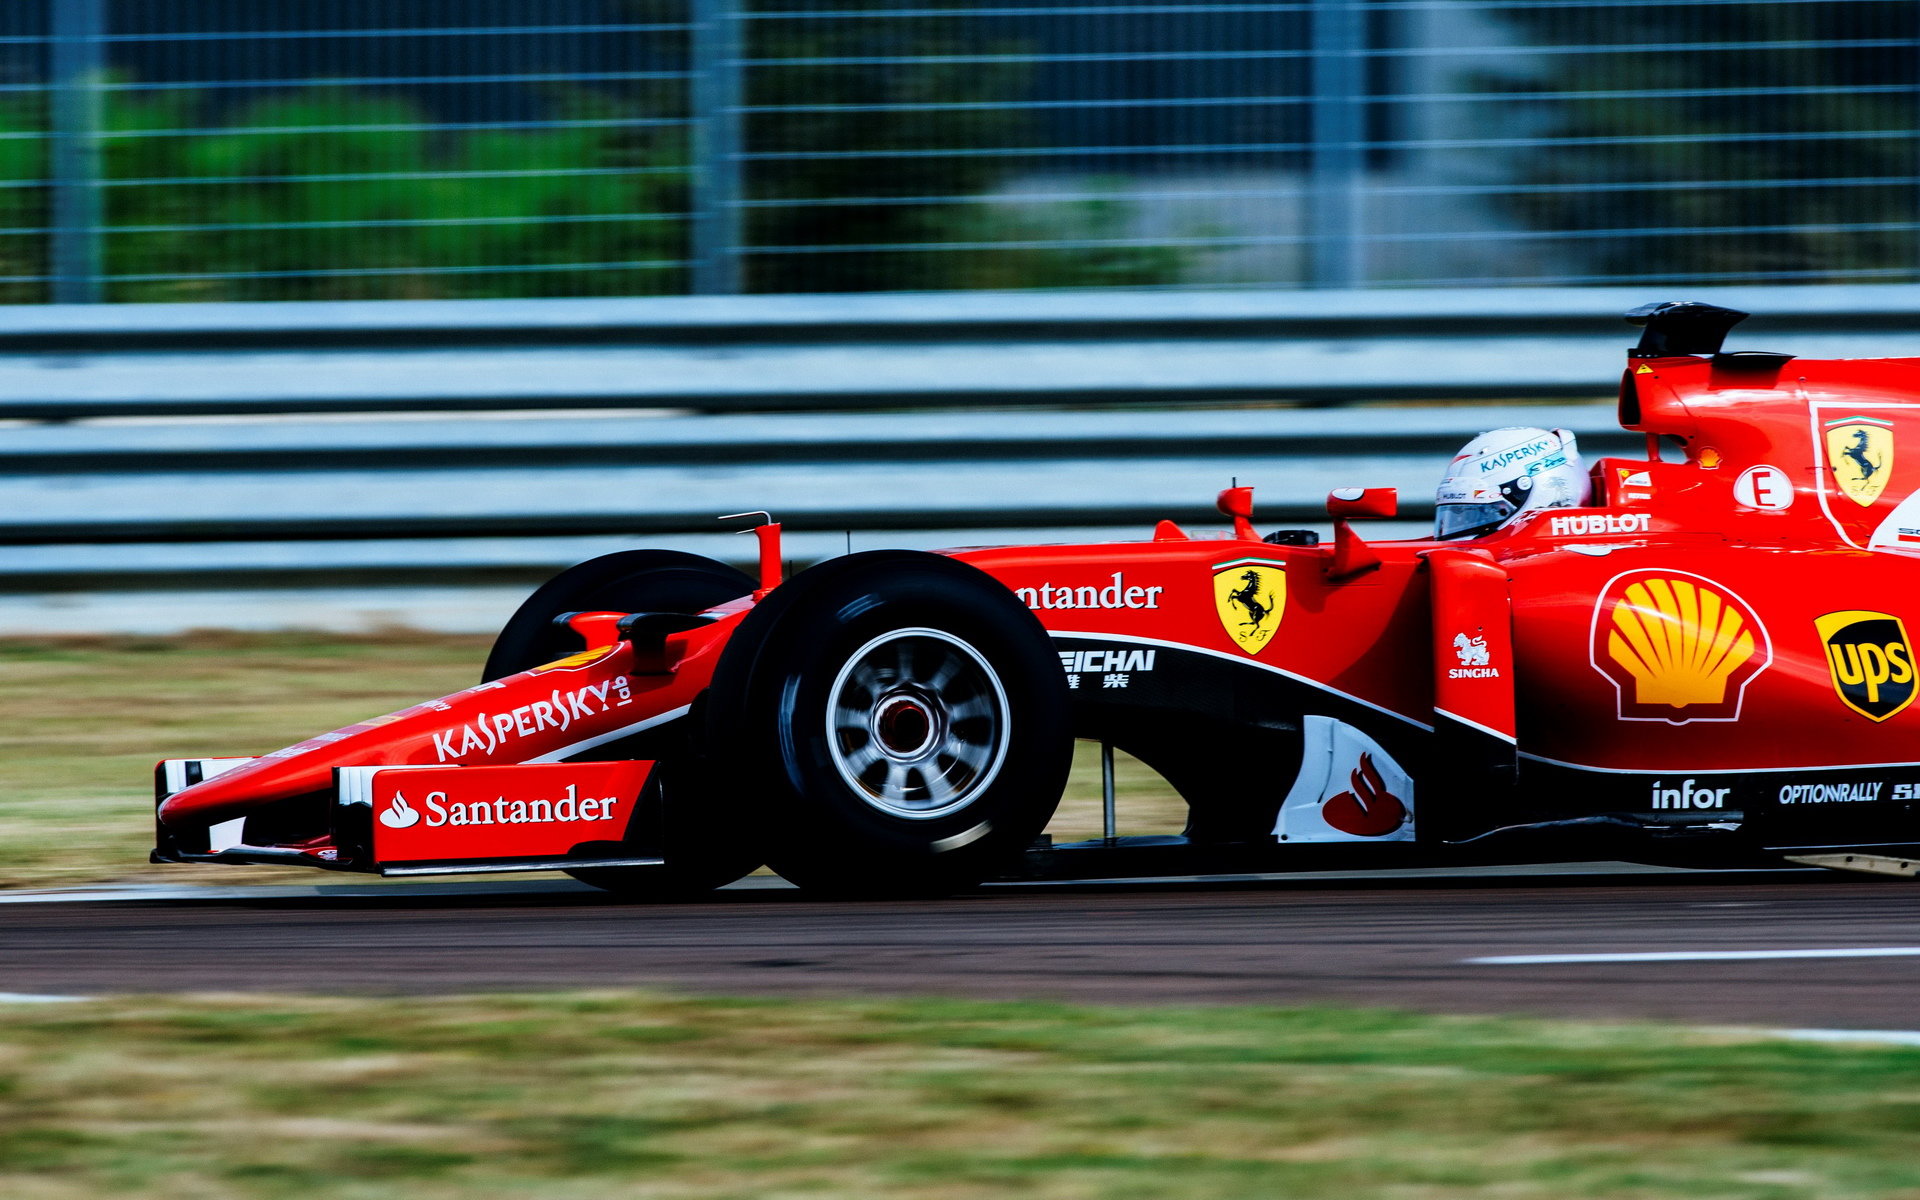 Test pneumatik Pirelli pro sezónu 2017 ve Fioranu